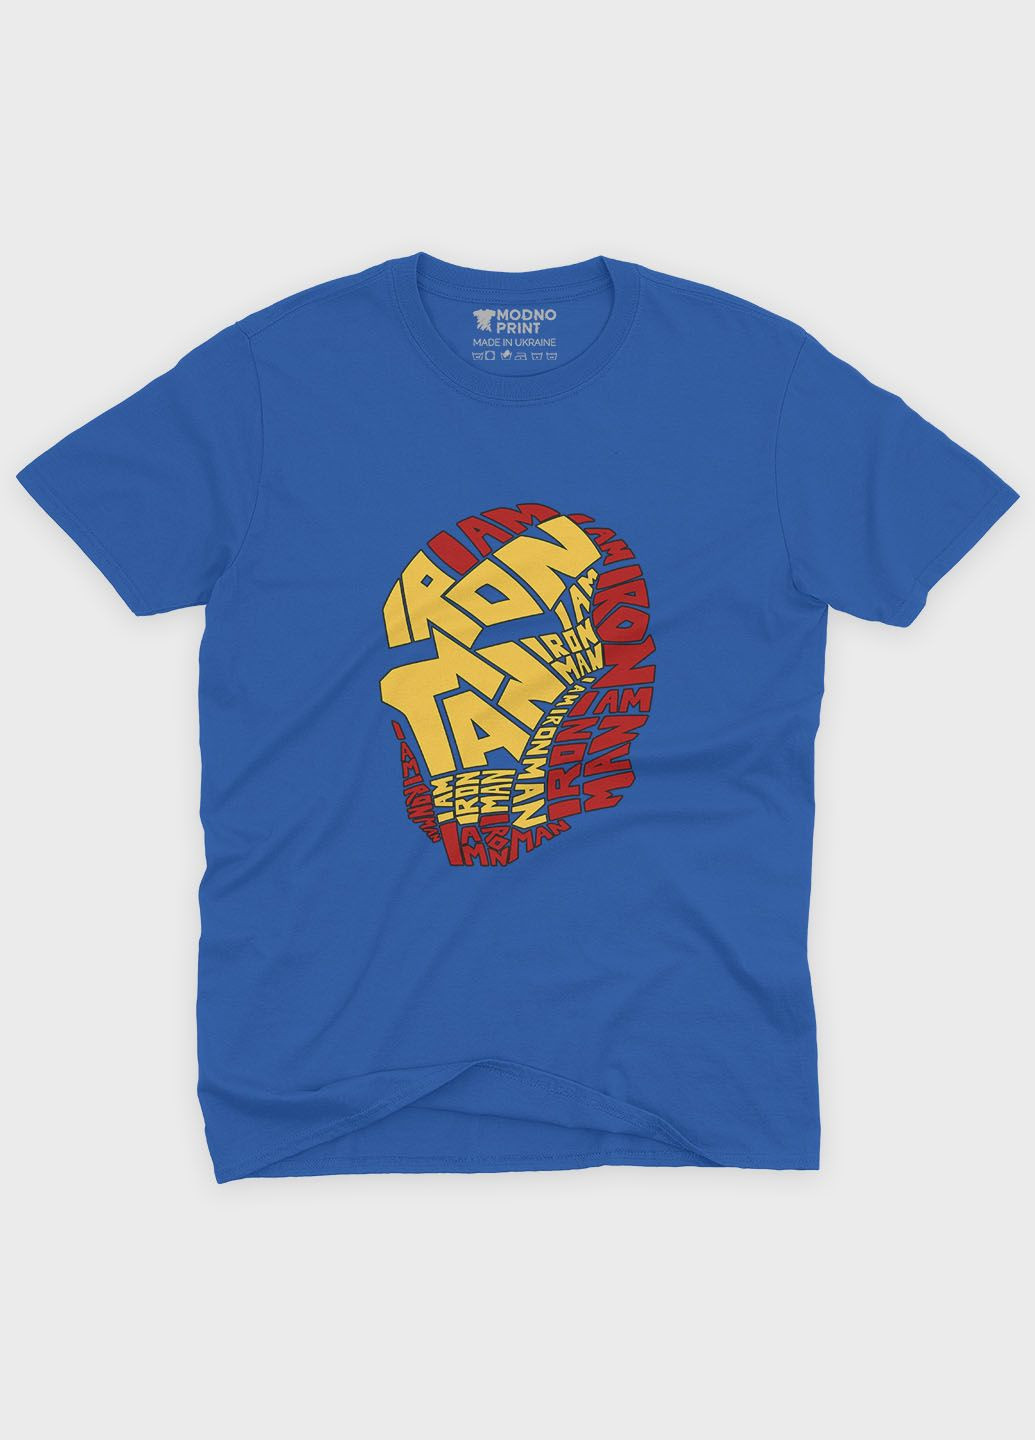 Синяя демисезонная футболка для мальчика с принтом супергероя - железный человек (ts001-1-brr-006-016-001-b) Modno